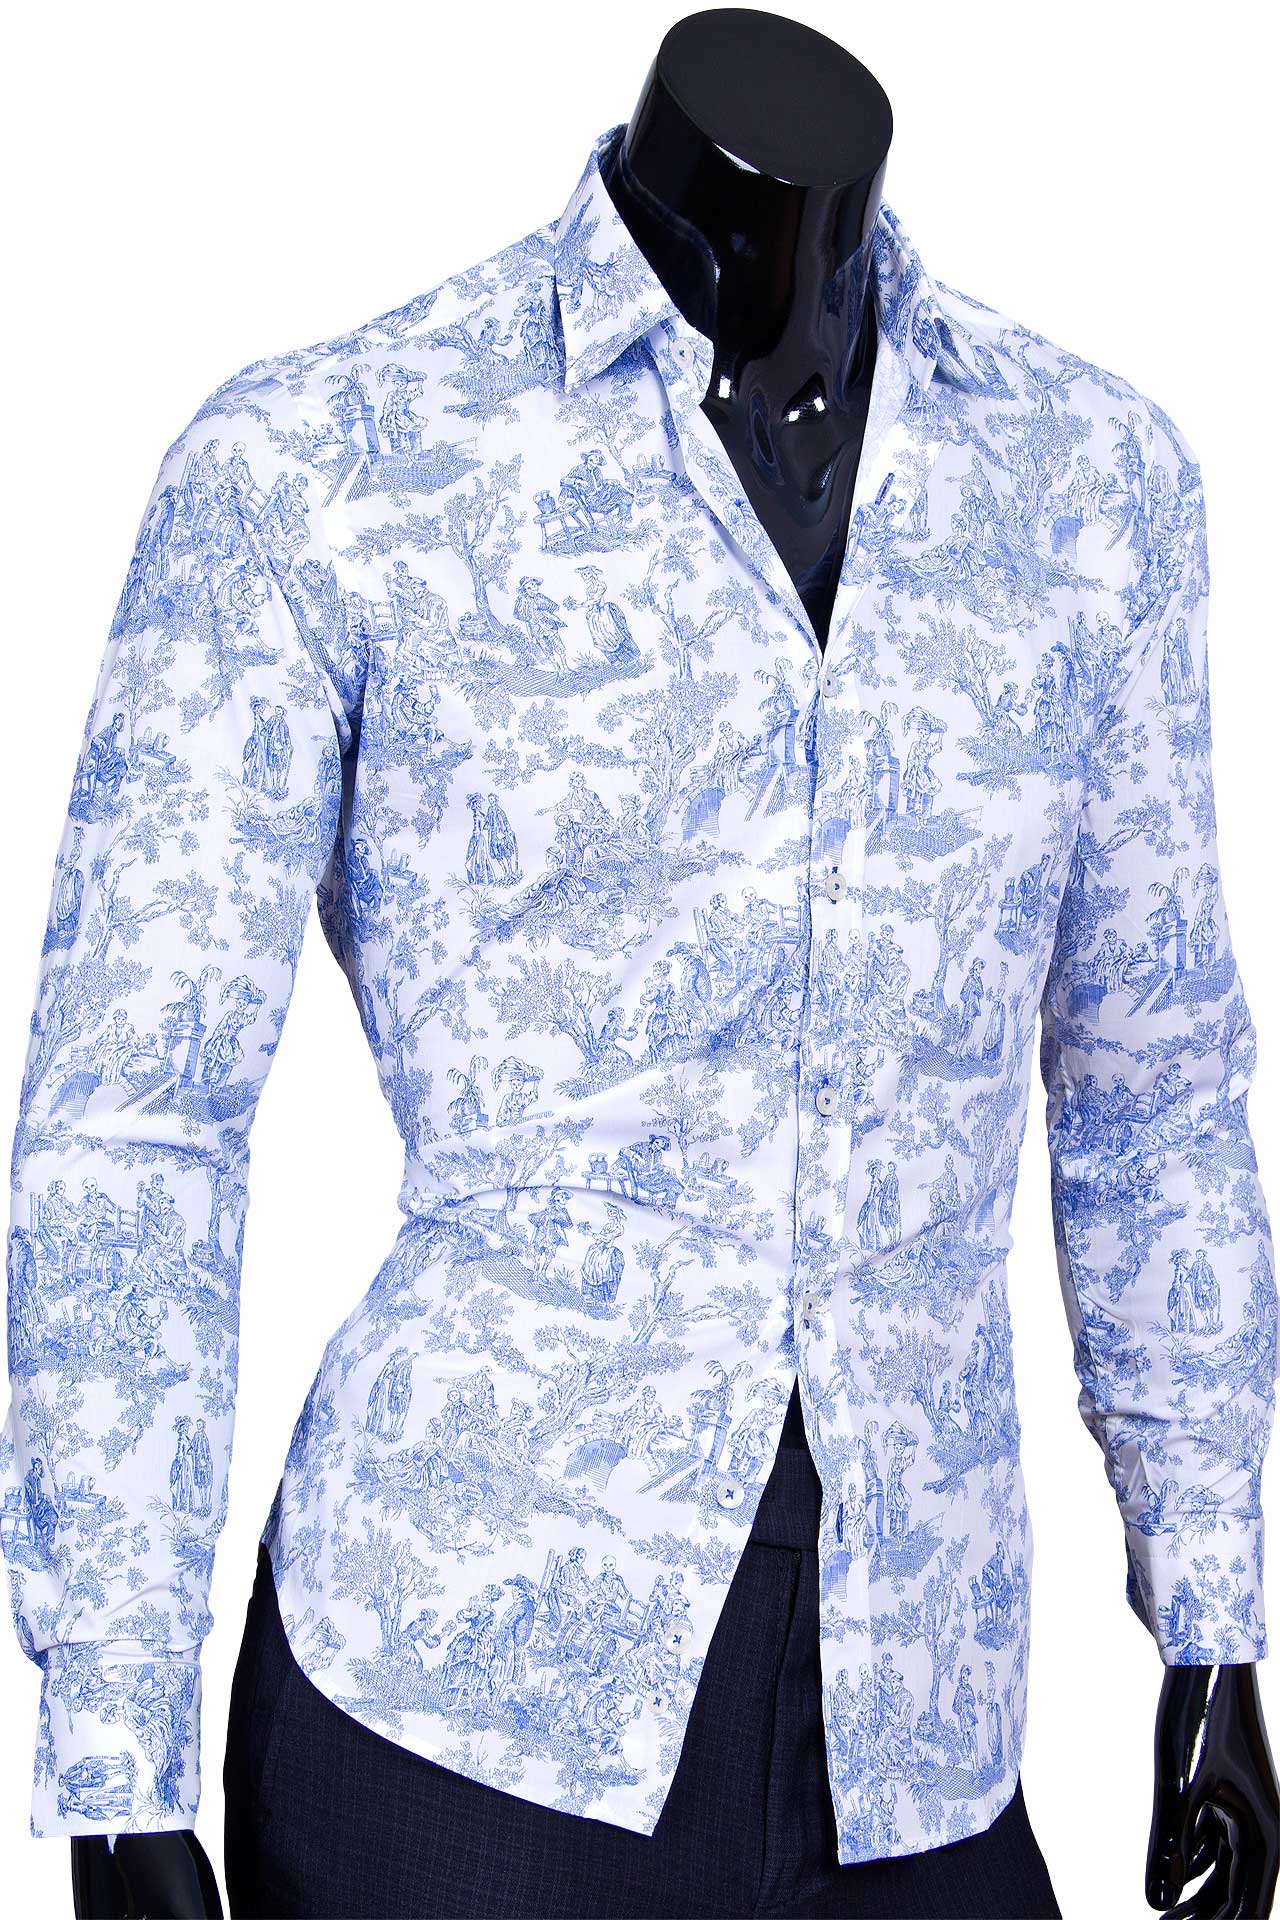 Мужская рубашка Marcel Massimo приталенная цвет белый с рисунком купить в Москве недорого